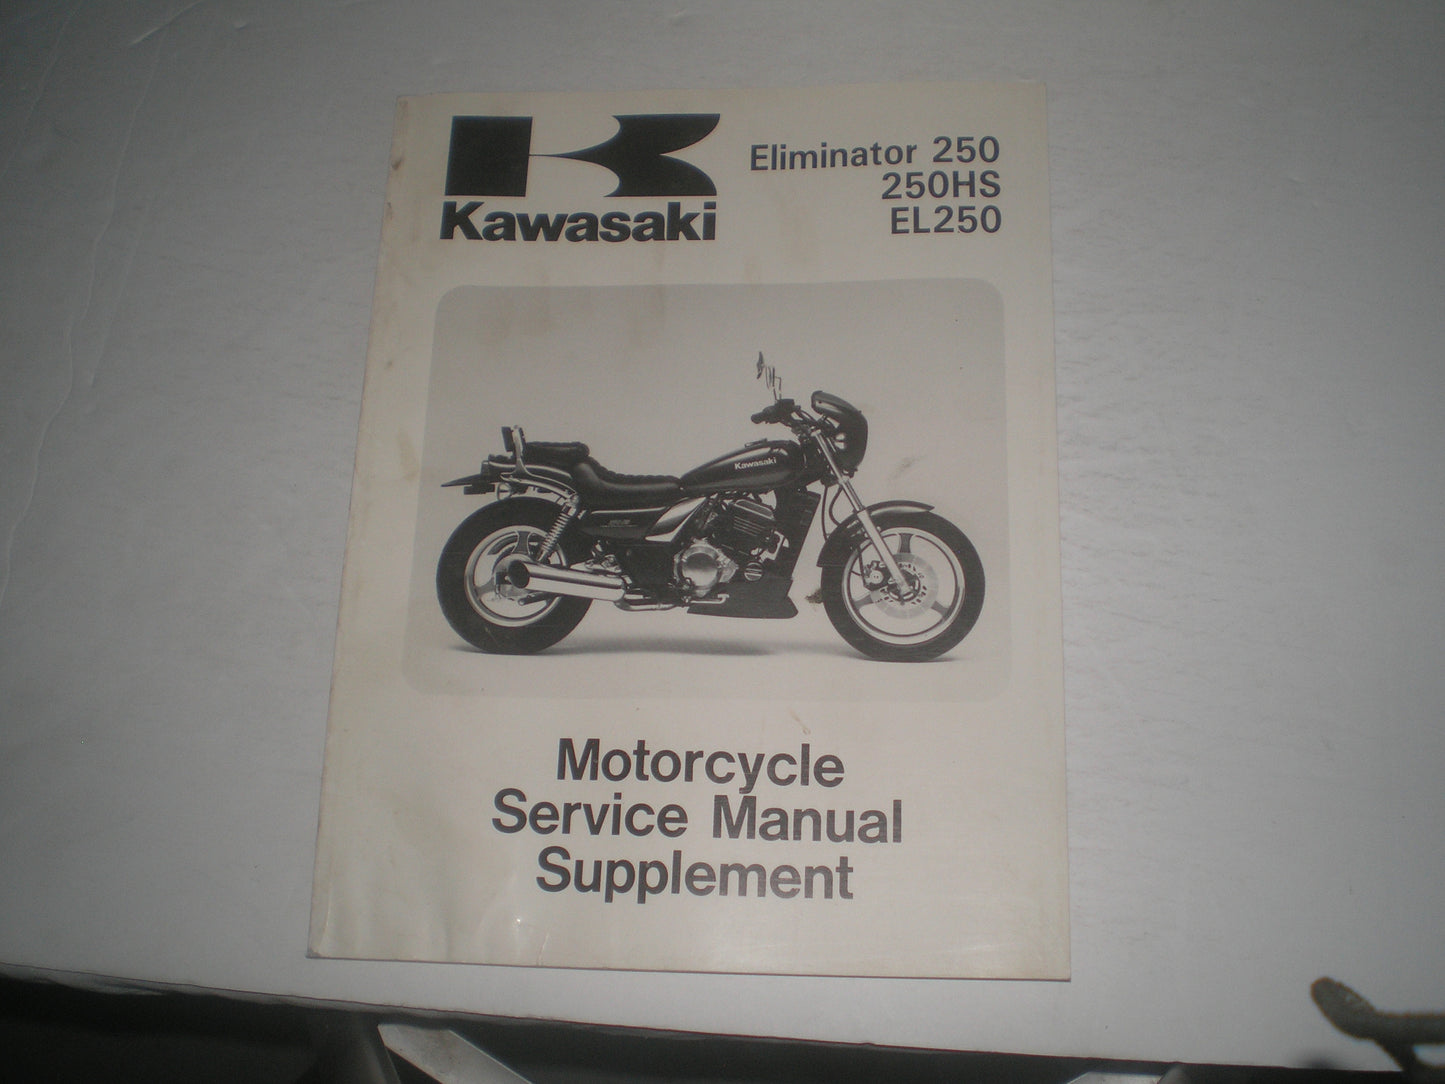 KAWASAKI EL250   Eliminator 250  250HS  EL250  1988-1994  Service Manual Supplement  99924-1093-53  #1367